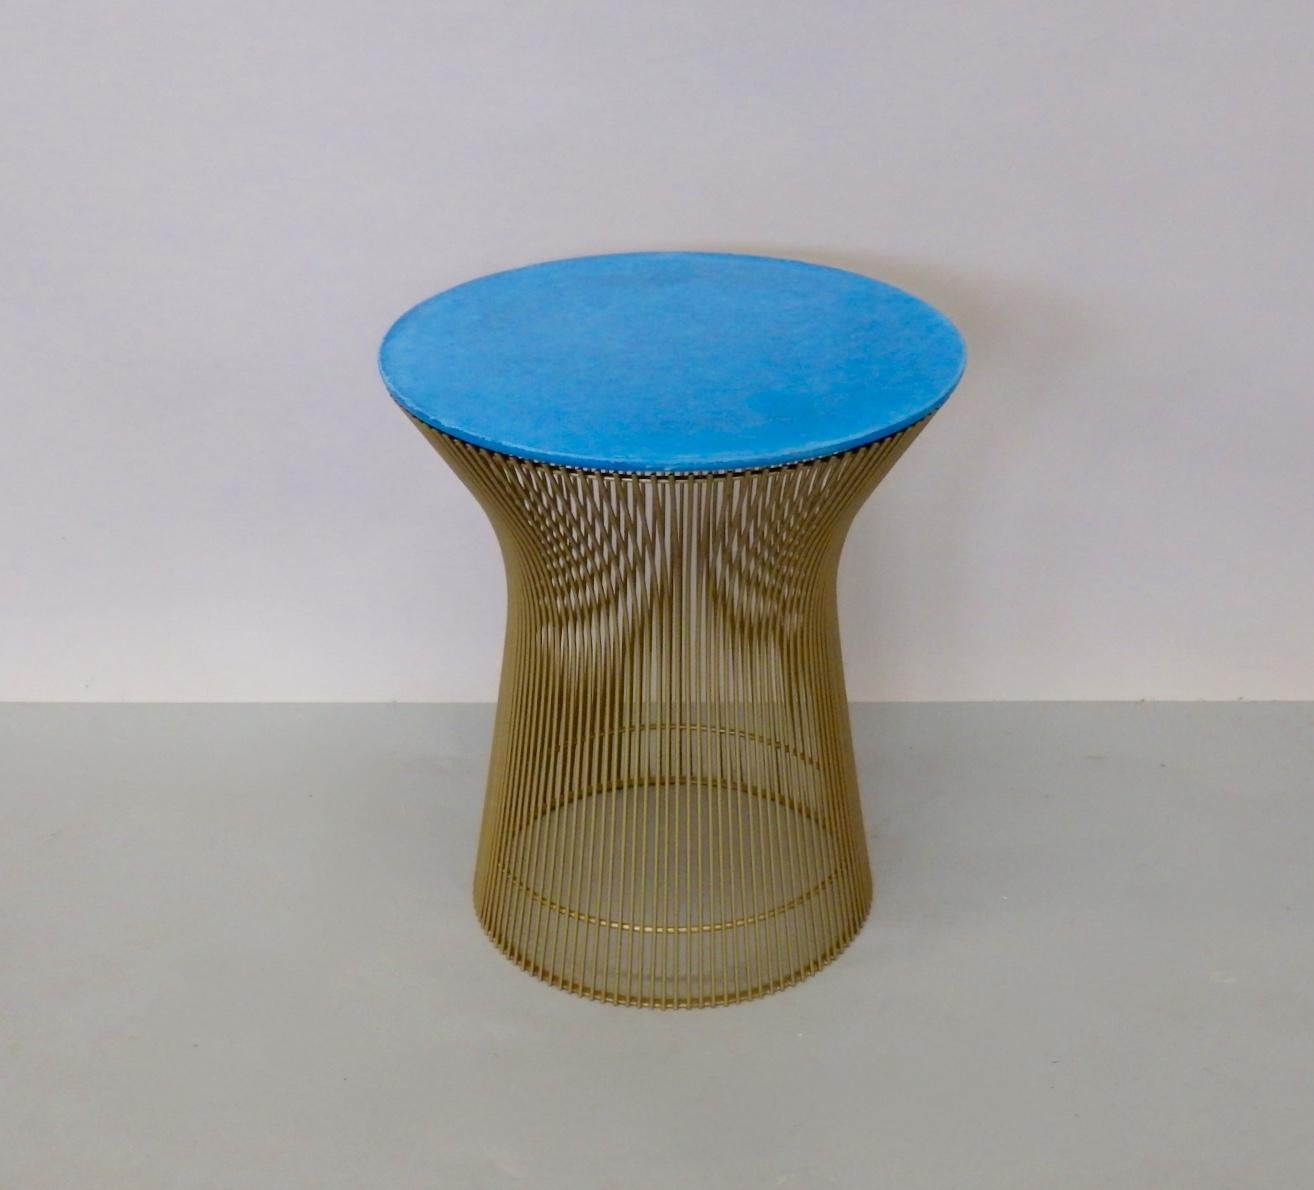 Table en fil de fer à revêtement en poudre d'or personnalisée de Warren Platner pour Knoll. Le dessus est également personnalisé en ciment de couleur bleue.